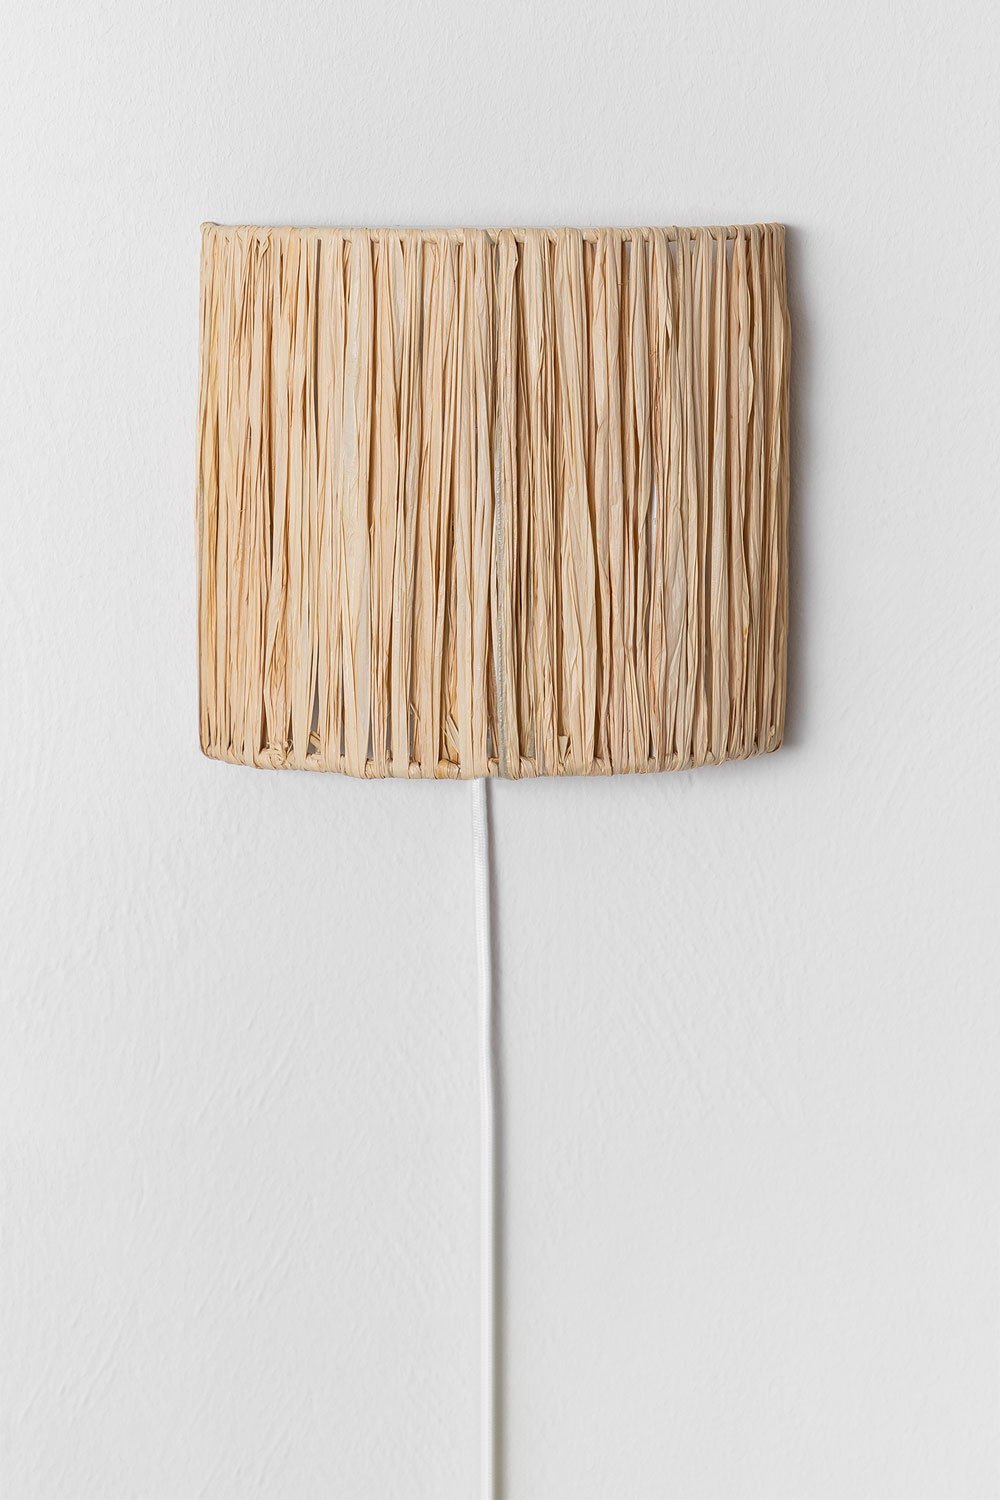 Duvert raffia wandlamp, galerij beeld 1